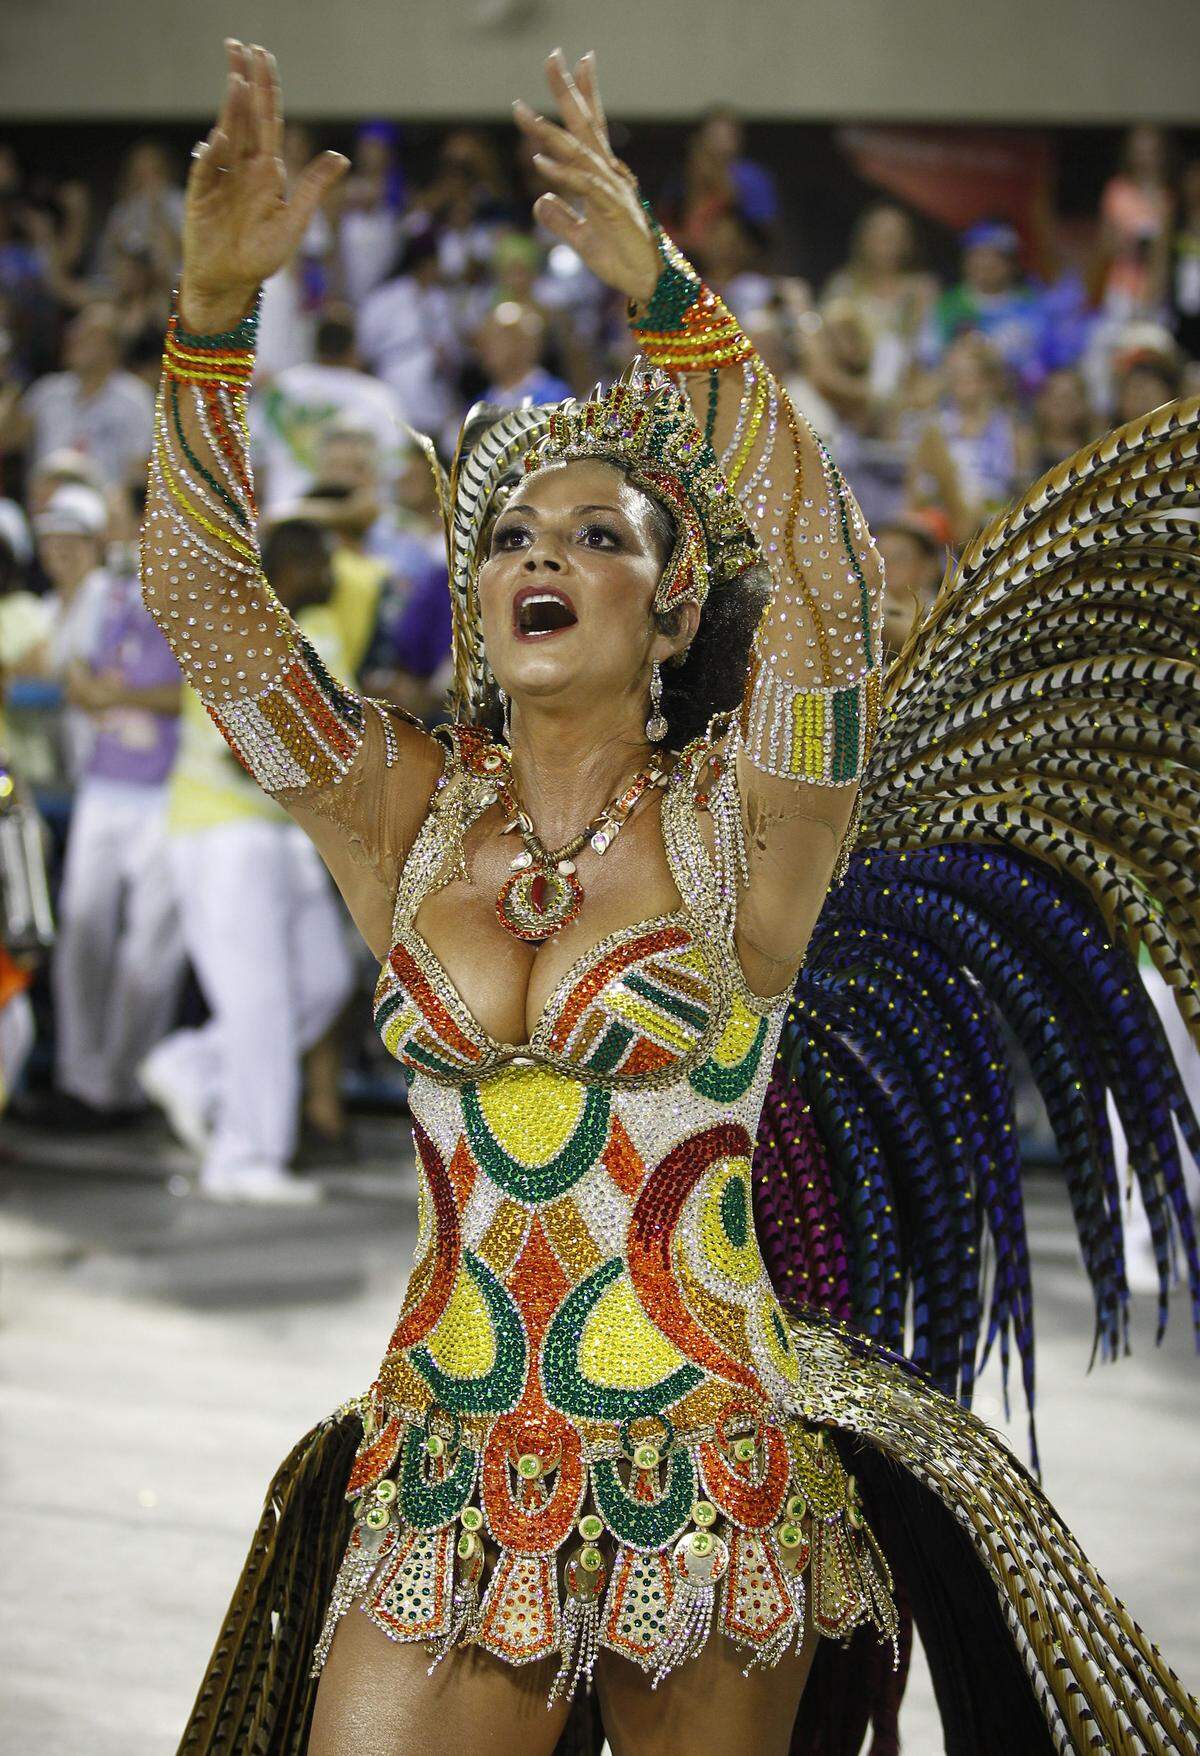 Der brasilianische Karneval sucht seinesgleichen und kann Jahr für Jahr mit immer größeren und prächtigeren Umzügen und Verkleidungen aufwarten. 2011 besuchten mehr als fünf Millionen Menschen den Karneval in Rio de Janeiro.